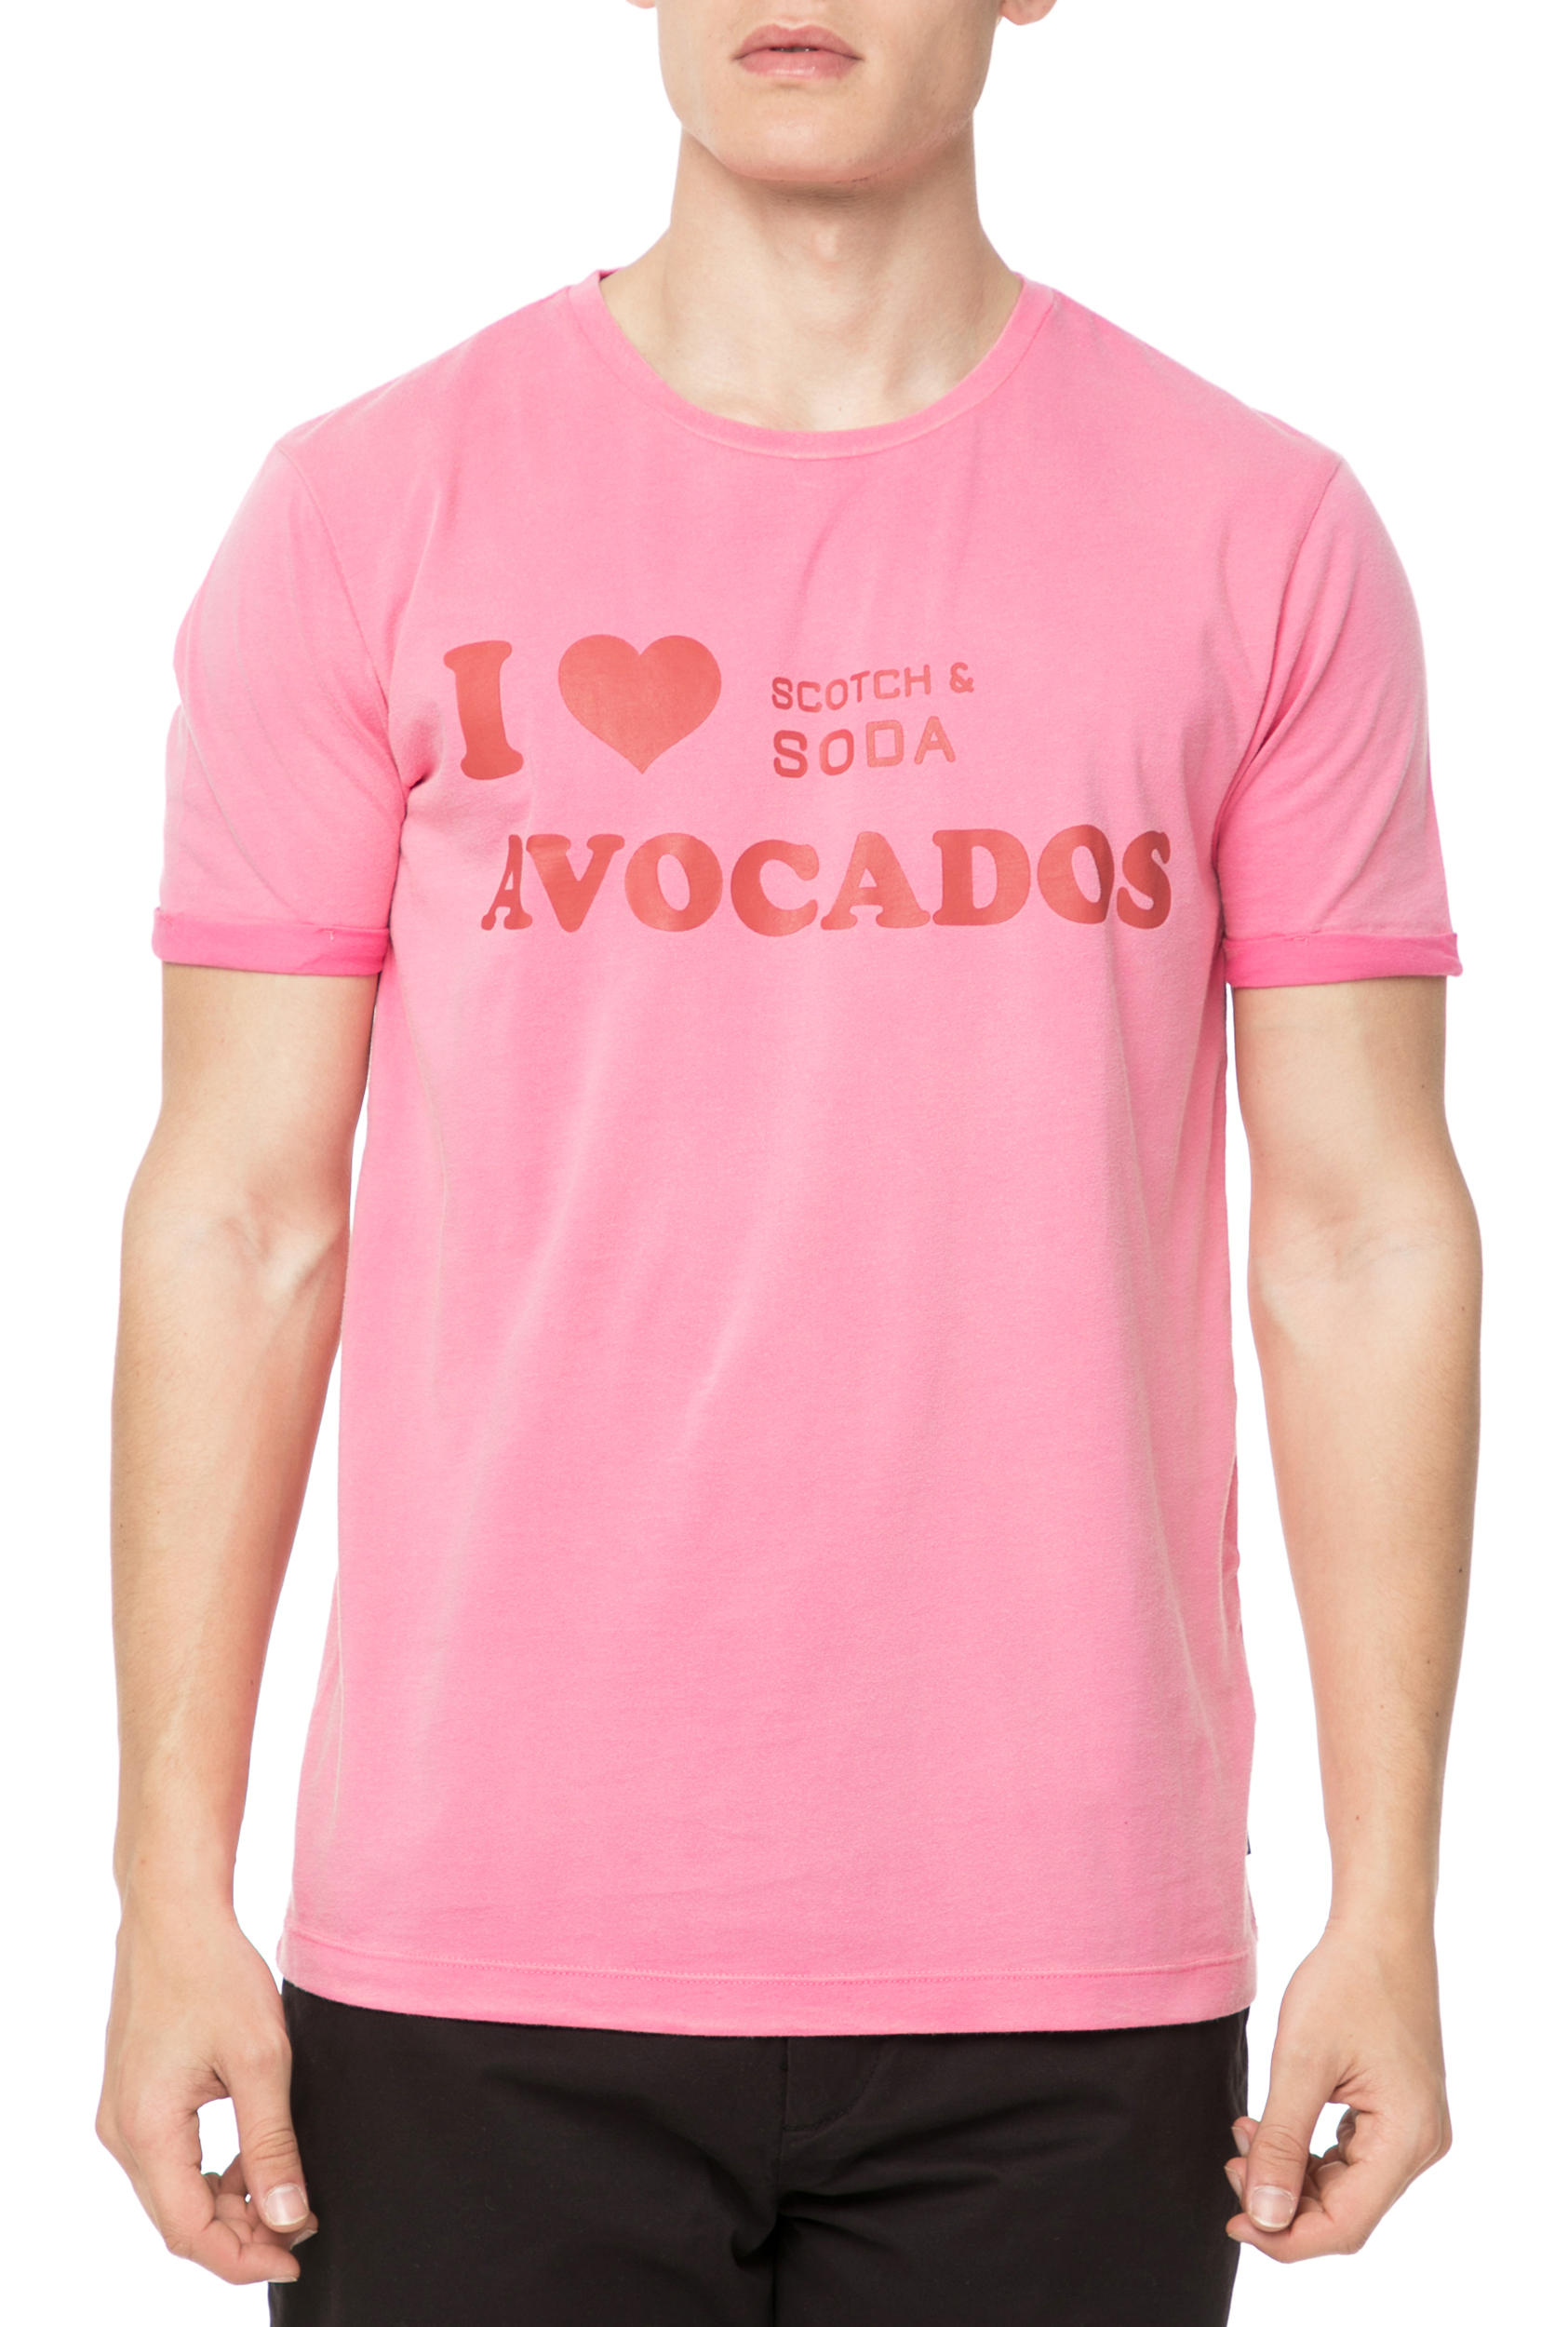 Ανδρικά/Ρούχα/Μπλούζες/Κοντομάνικες SCOTCH & SODA - Ανδρικό t-shirt Scotch & Soda Sun-bleached ροζ